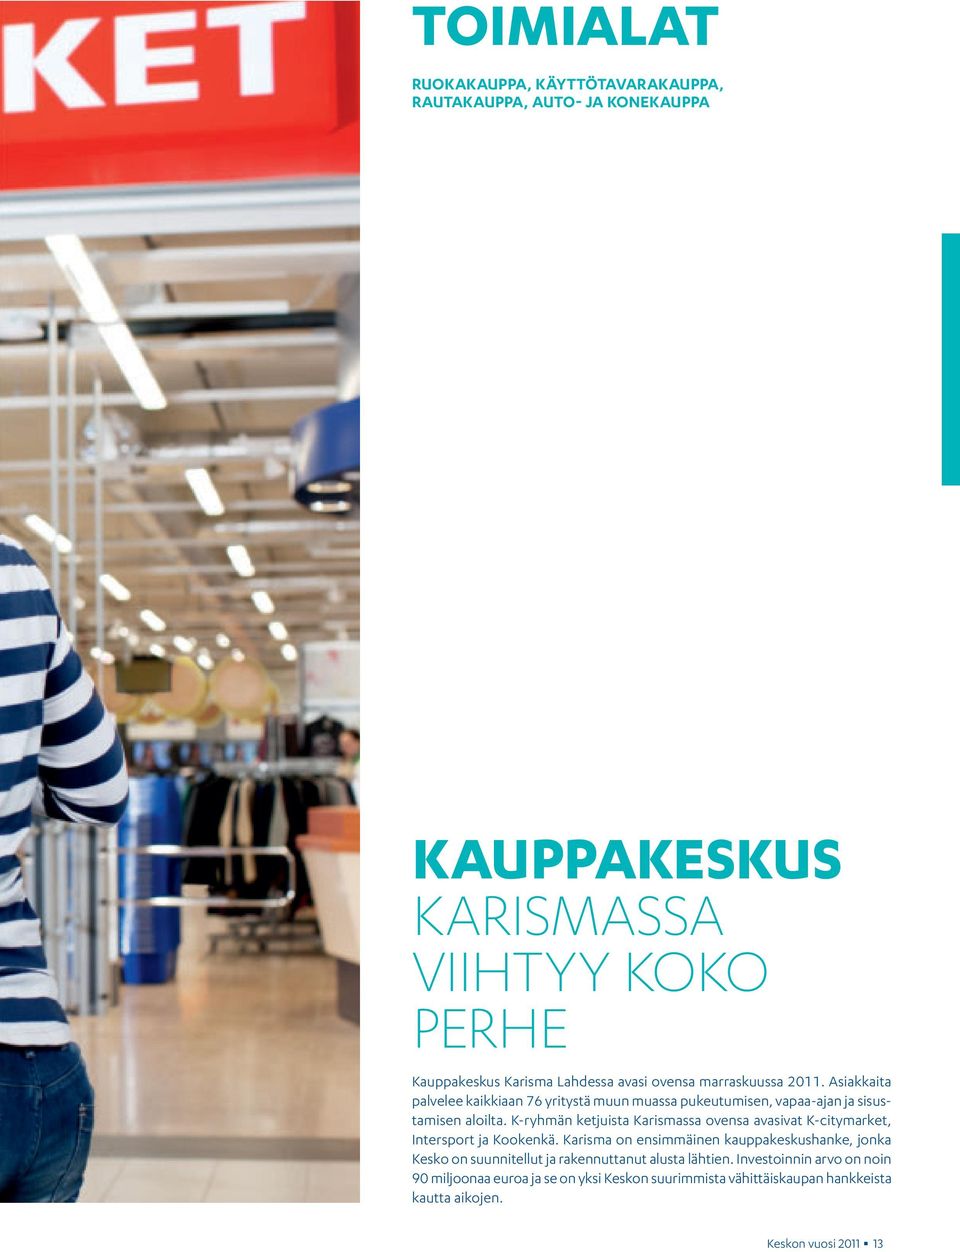 K-ryhmän ketjuista Karismassa ovensa avasivat K-citymarket, Intersport ja Kookenkä.